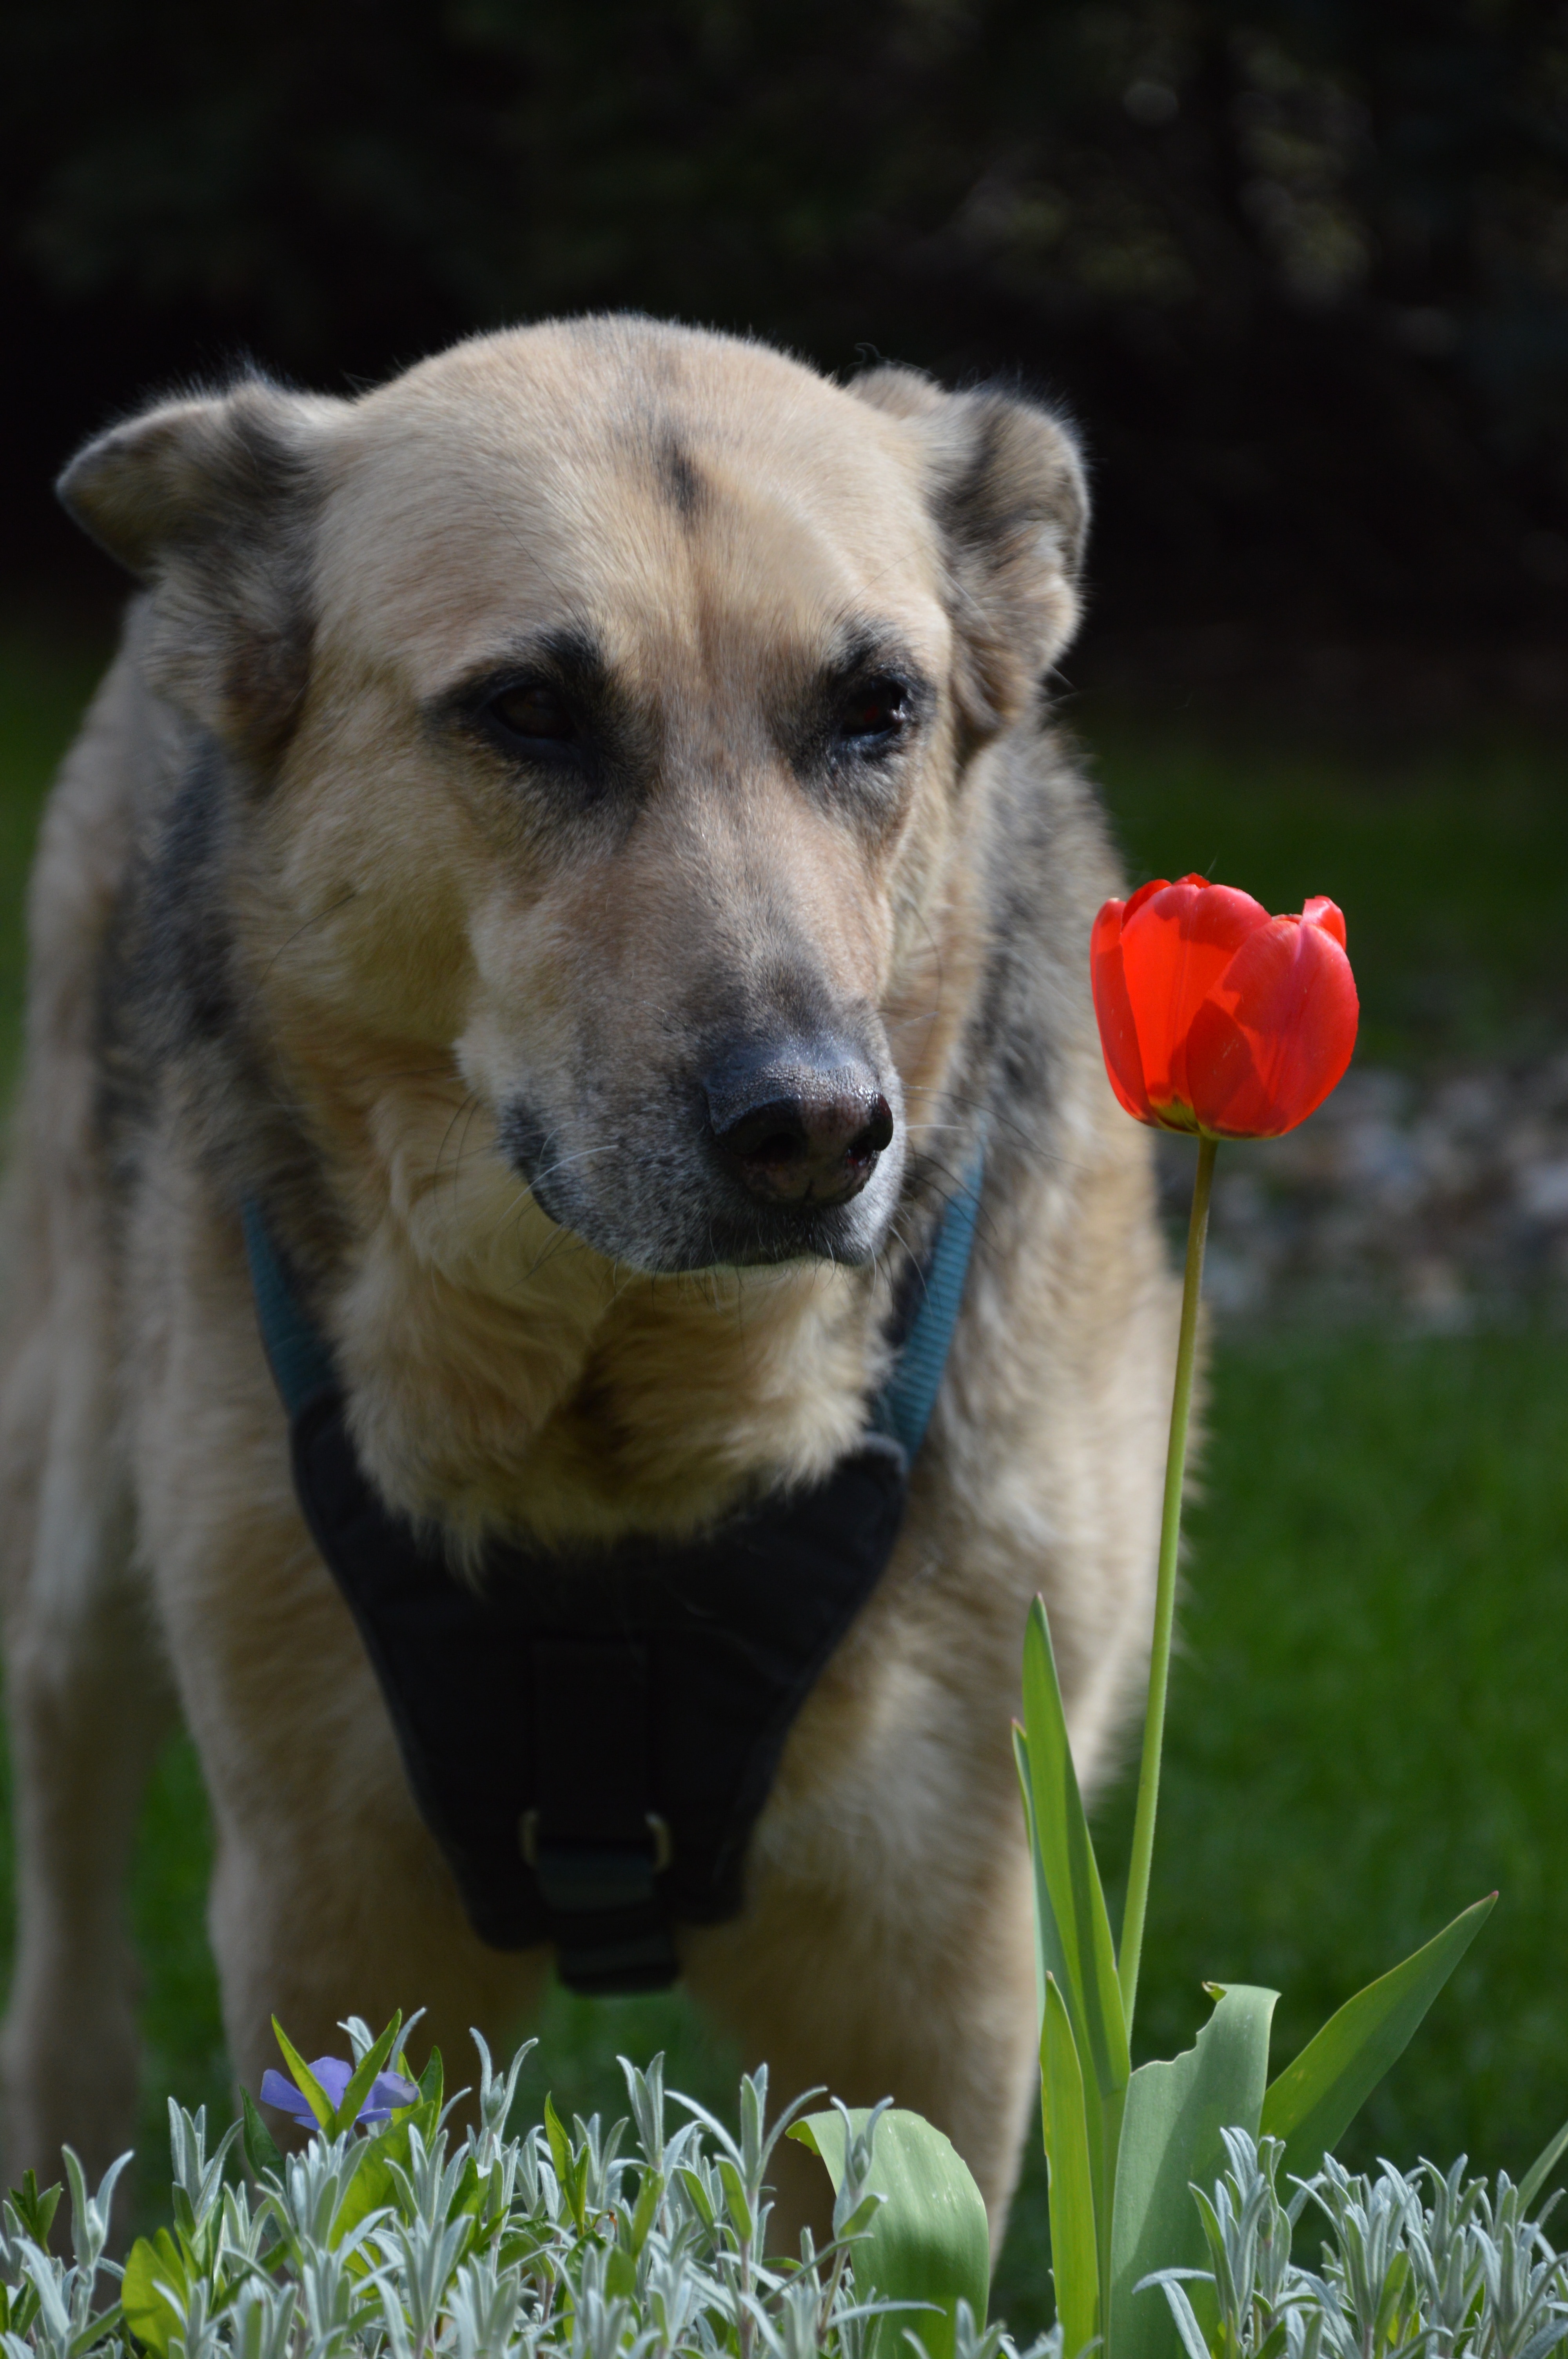 German Shepherd and red petaled flower on focus photo